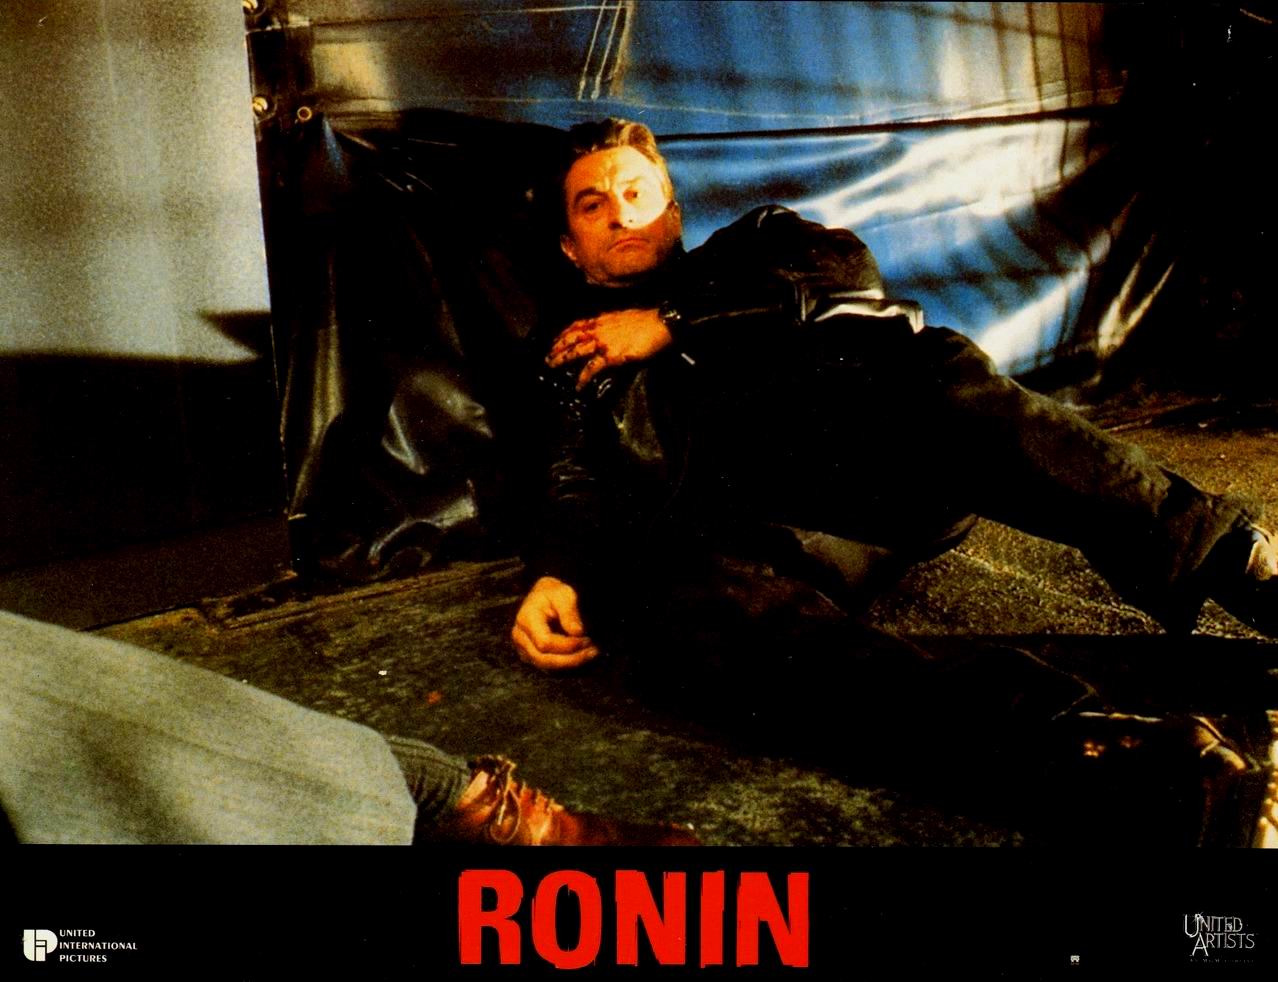 Ronin (1998) John Frankenheimer - Ronin (03.11.1997 / 03.03.1998)